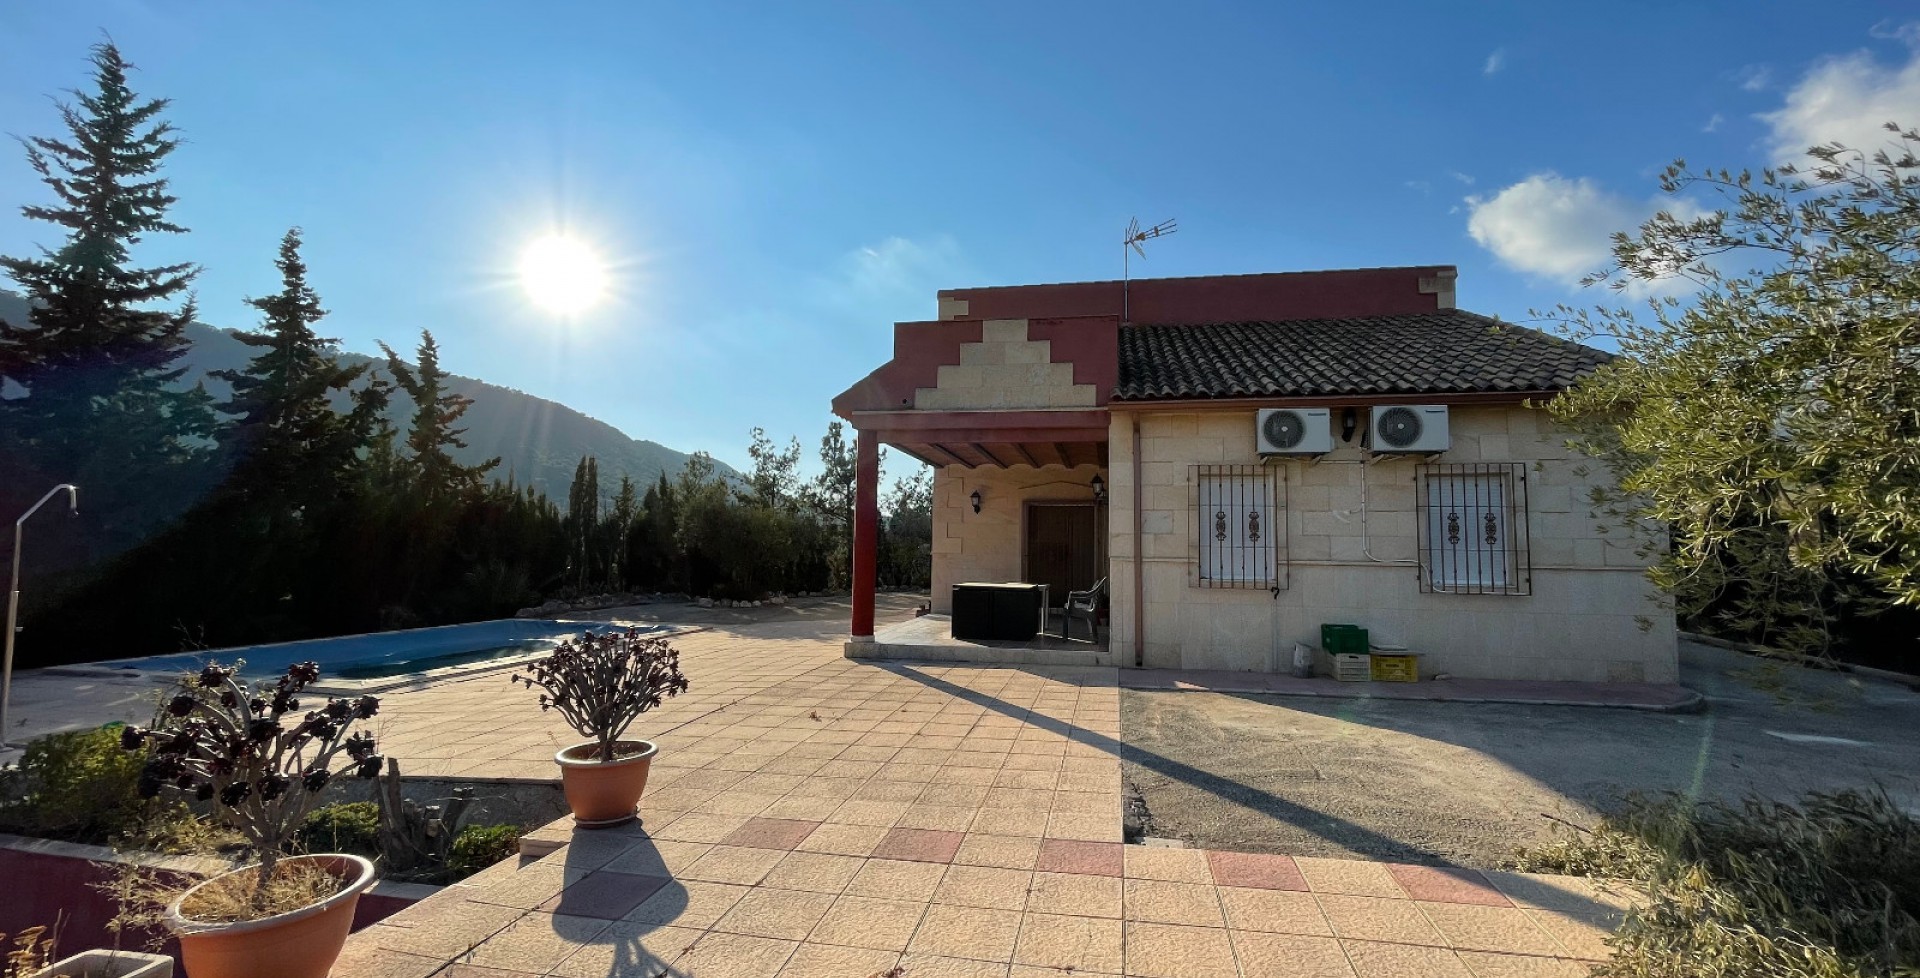 Gran alojamiento en el campo independiente con espectacular pisicina, Ojós, Murcia, España